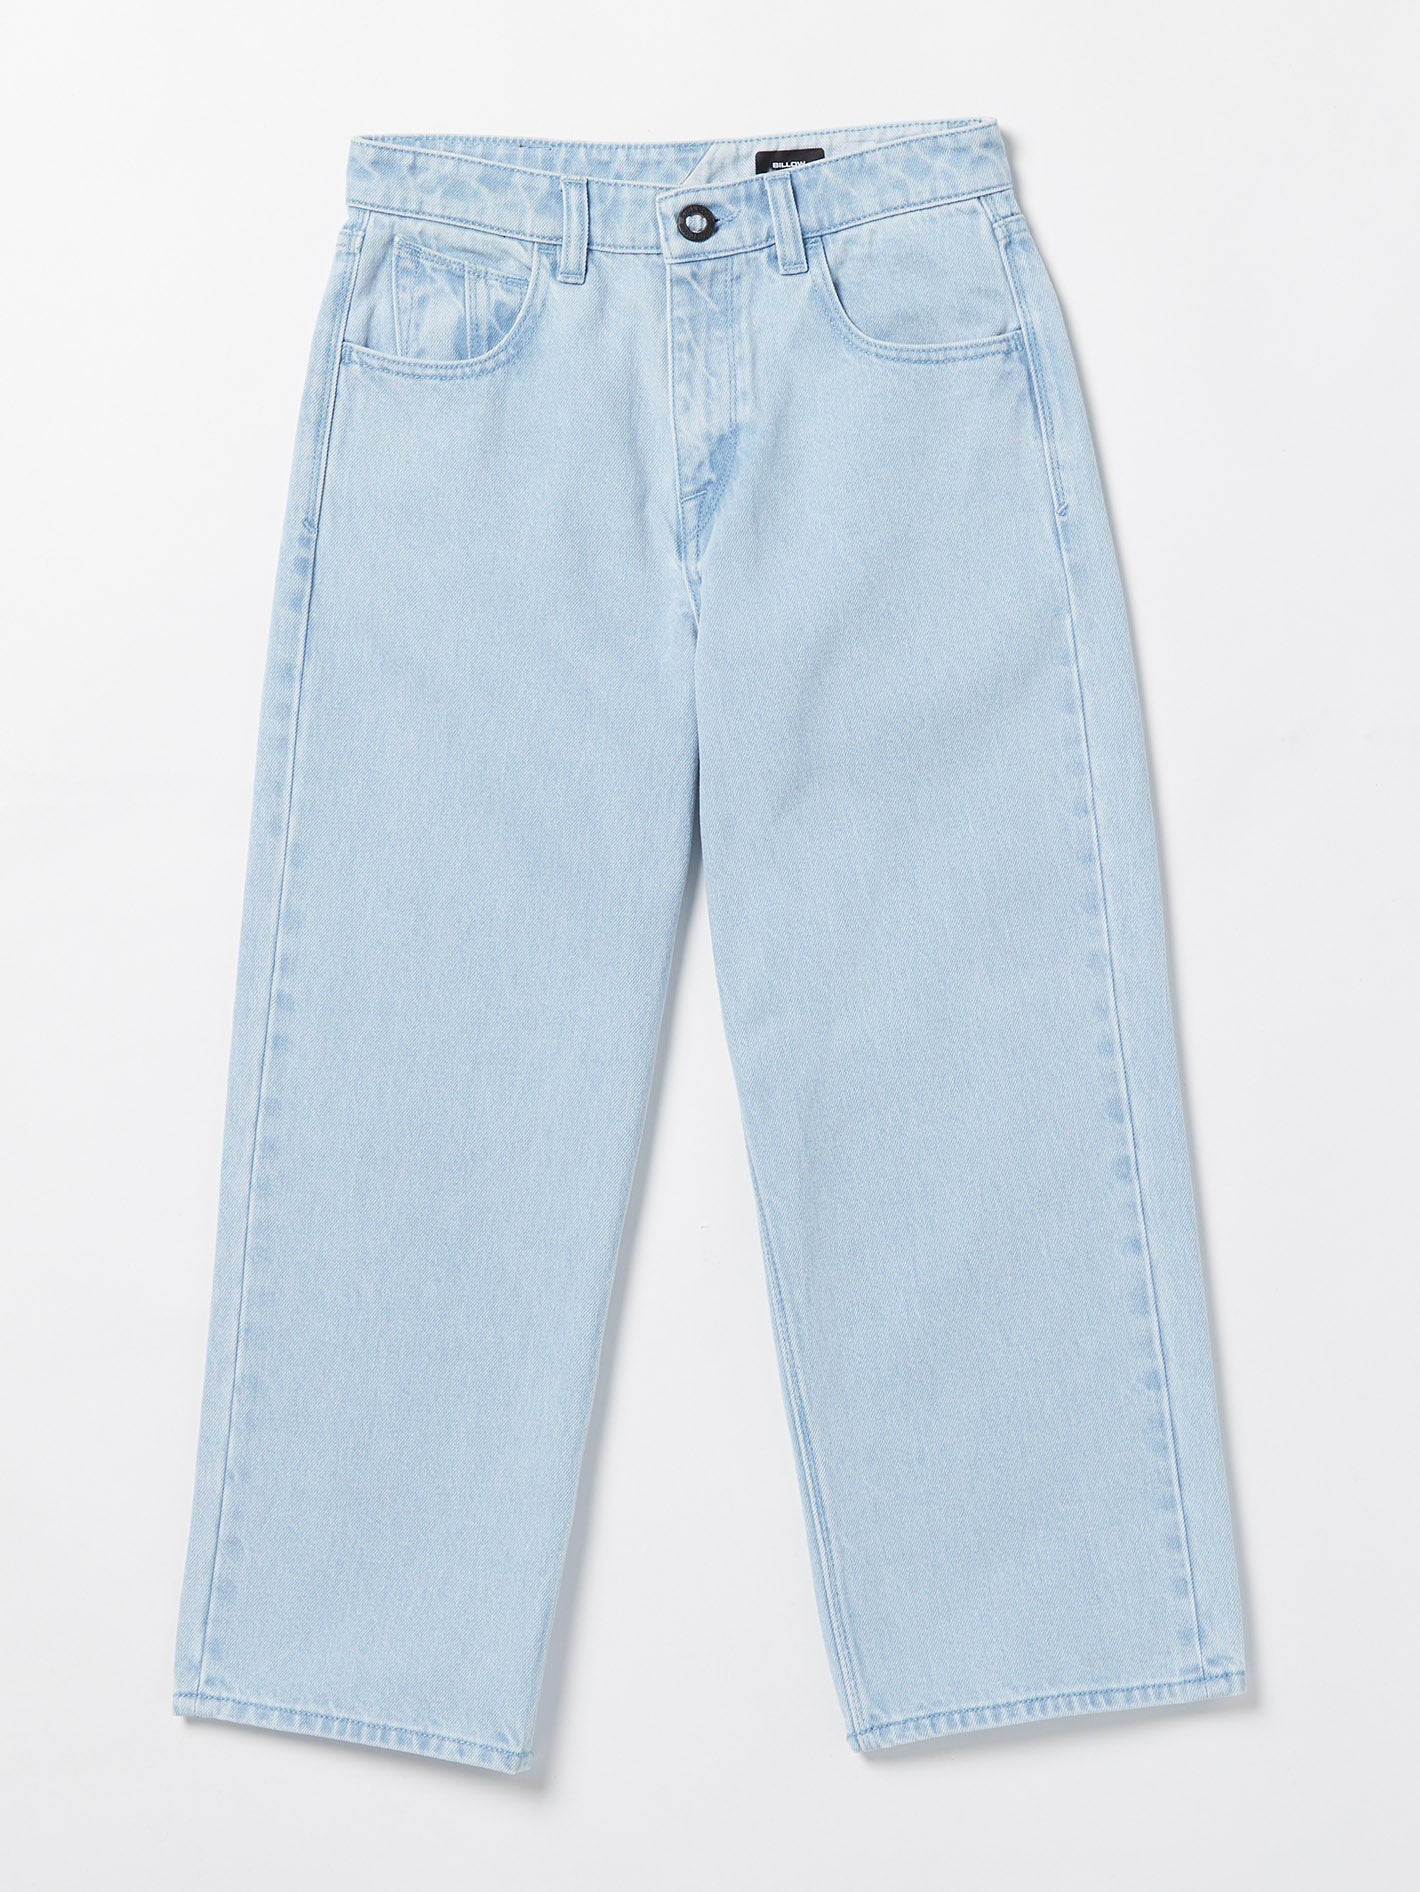 Billow Jeans - LIGHT BLUE - (KIDS) (C1932200_LBL) [F]